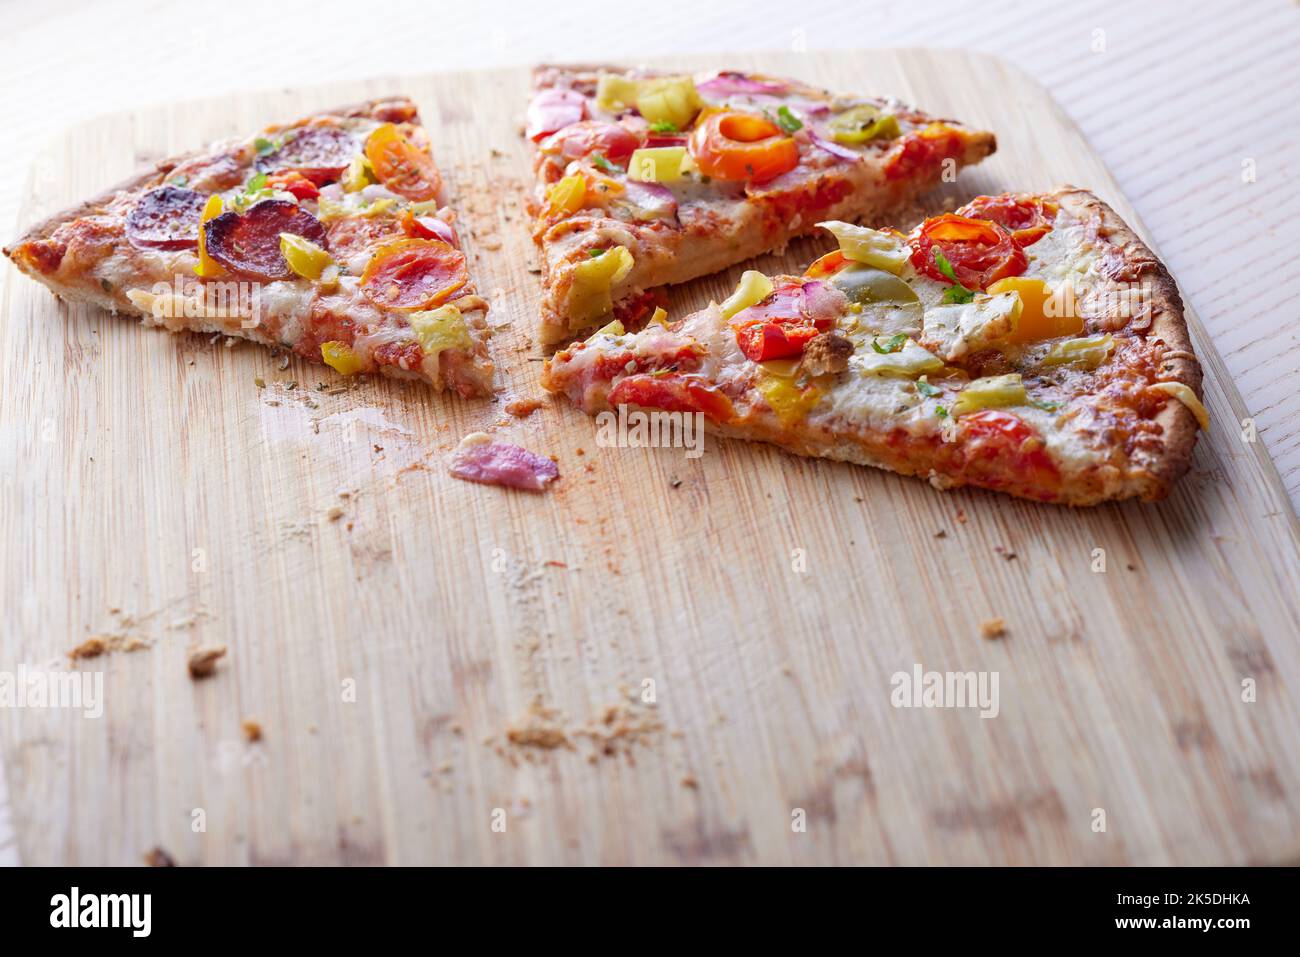 Pizza con salami, pimientos de pepperoni, tomates y cebollas en una mesa con espacio para copias Foto de stock